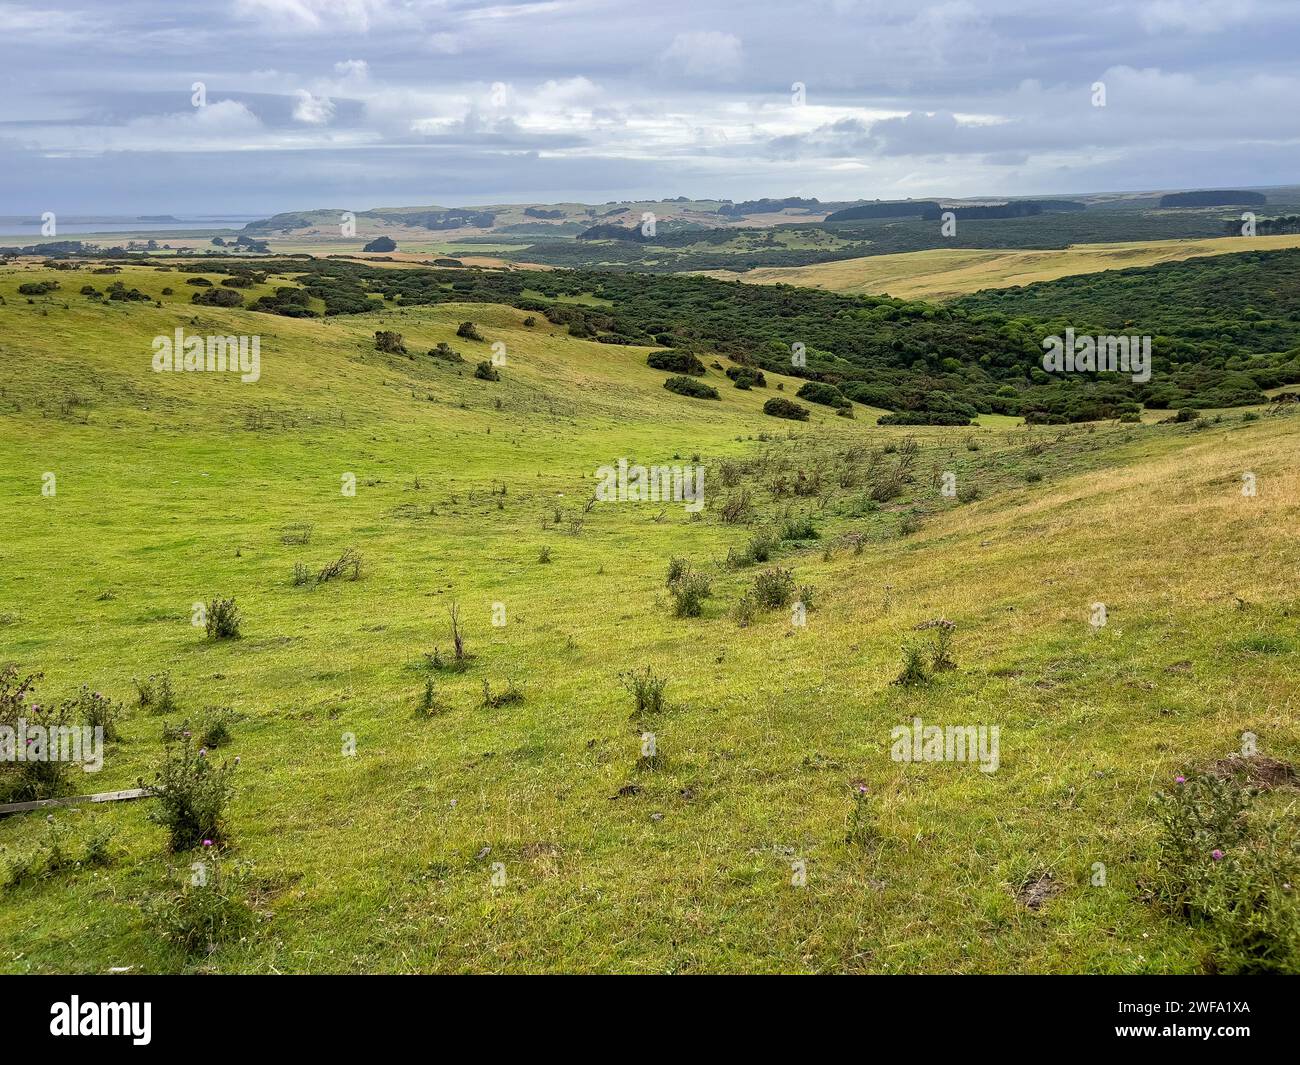 The scenic windswept landscape of Chatham Island, New Zealand Stock Photo